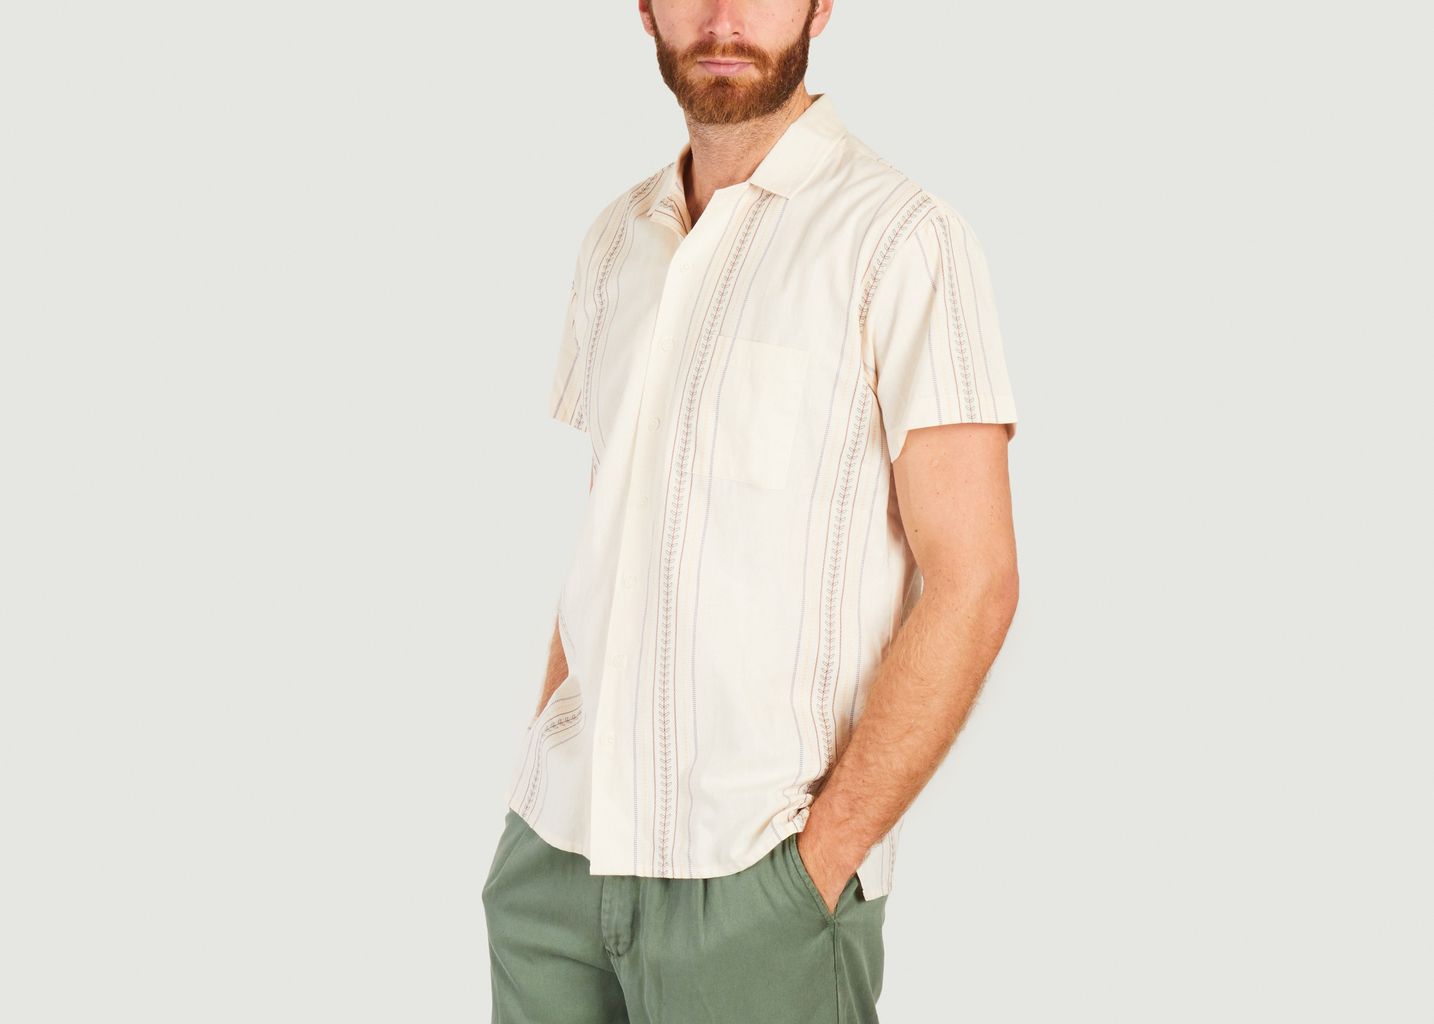 Bernal cotton striped shirt - Olow